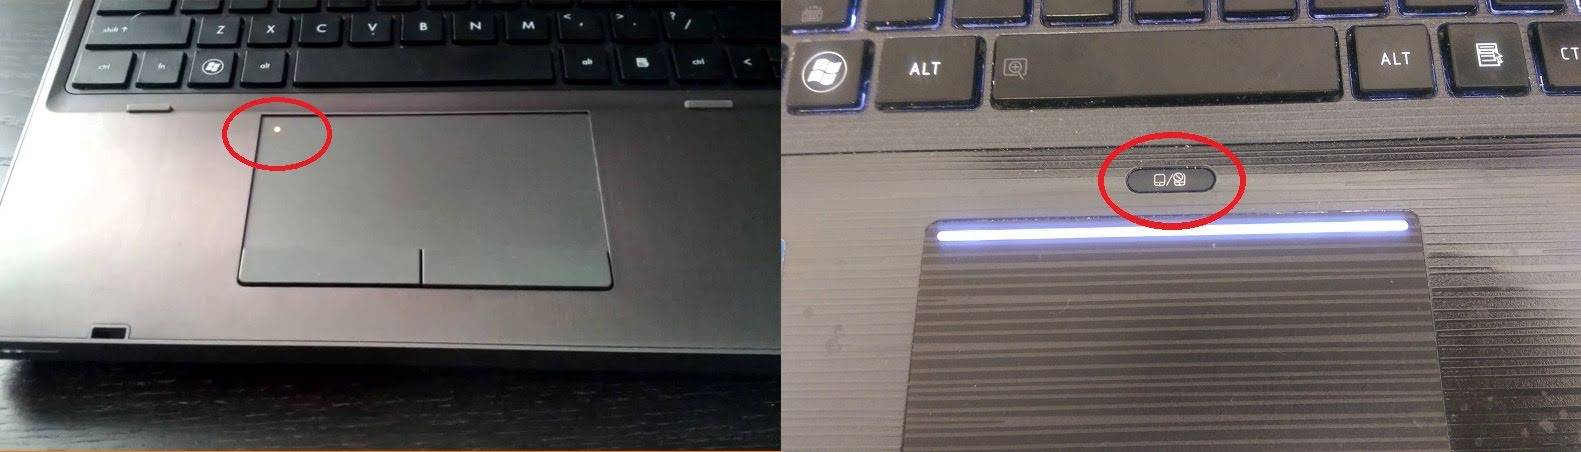 Почему не работает сенсорная панель ноутбука